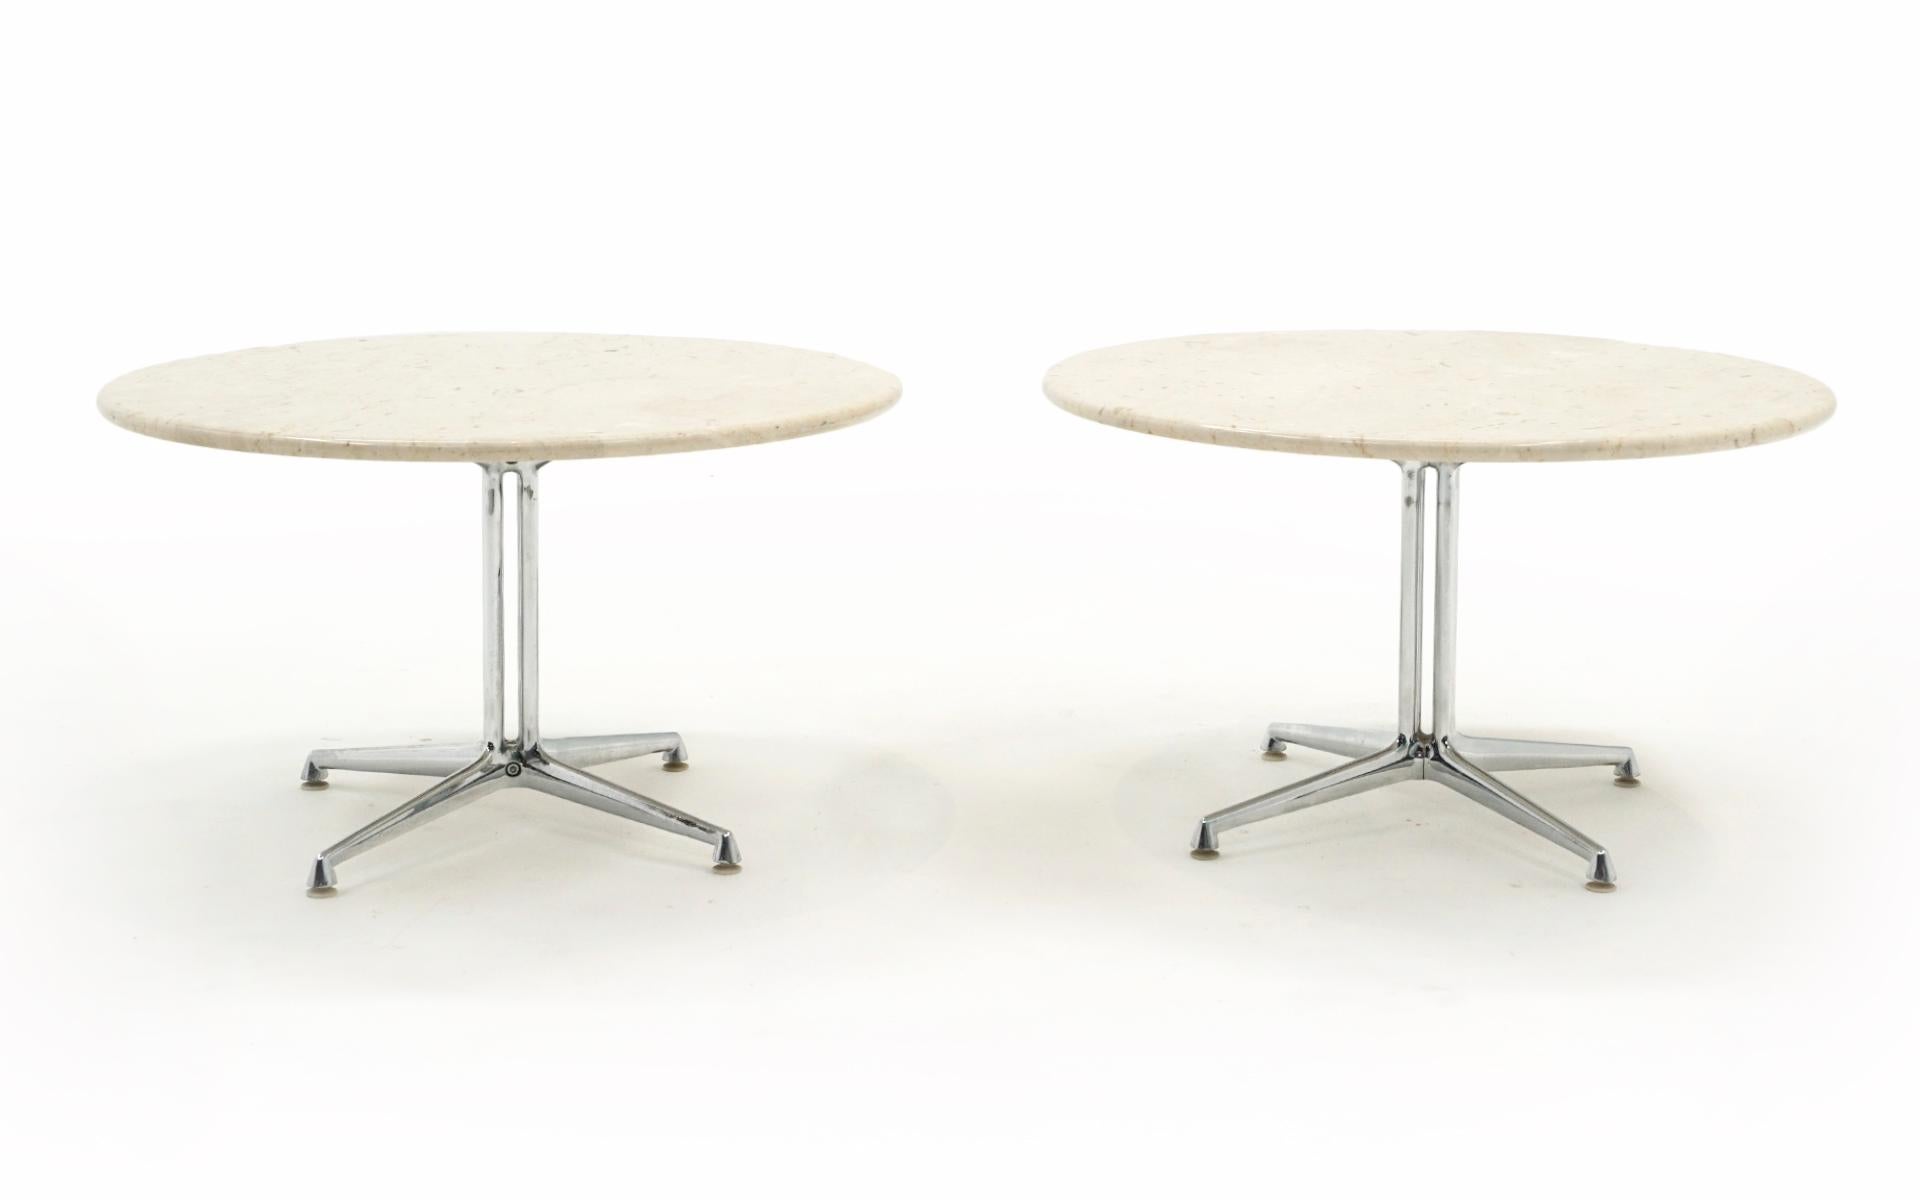 Ein Paar passende La Fonda-Tische, entworfen von Charles und Ray Eames für Alexander Girards La Fonda-Restaurant. Diese beiden Tische stehen seit ihrer Neuanschaffung in den 1970er Jahren zusammen in einem gemeinsamen Büro. Beide weisen, wenn